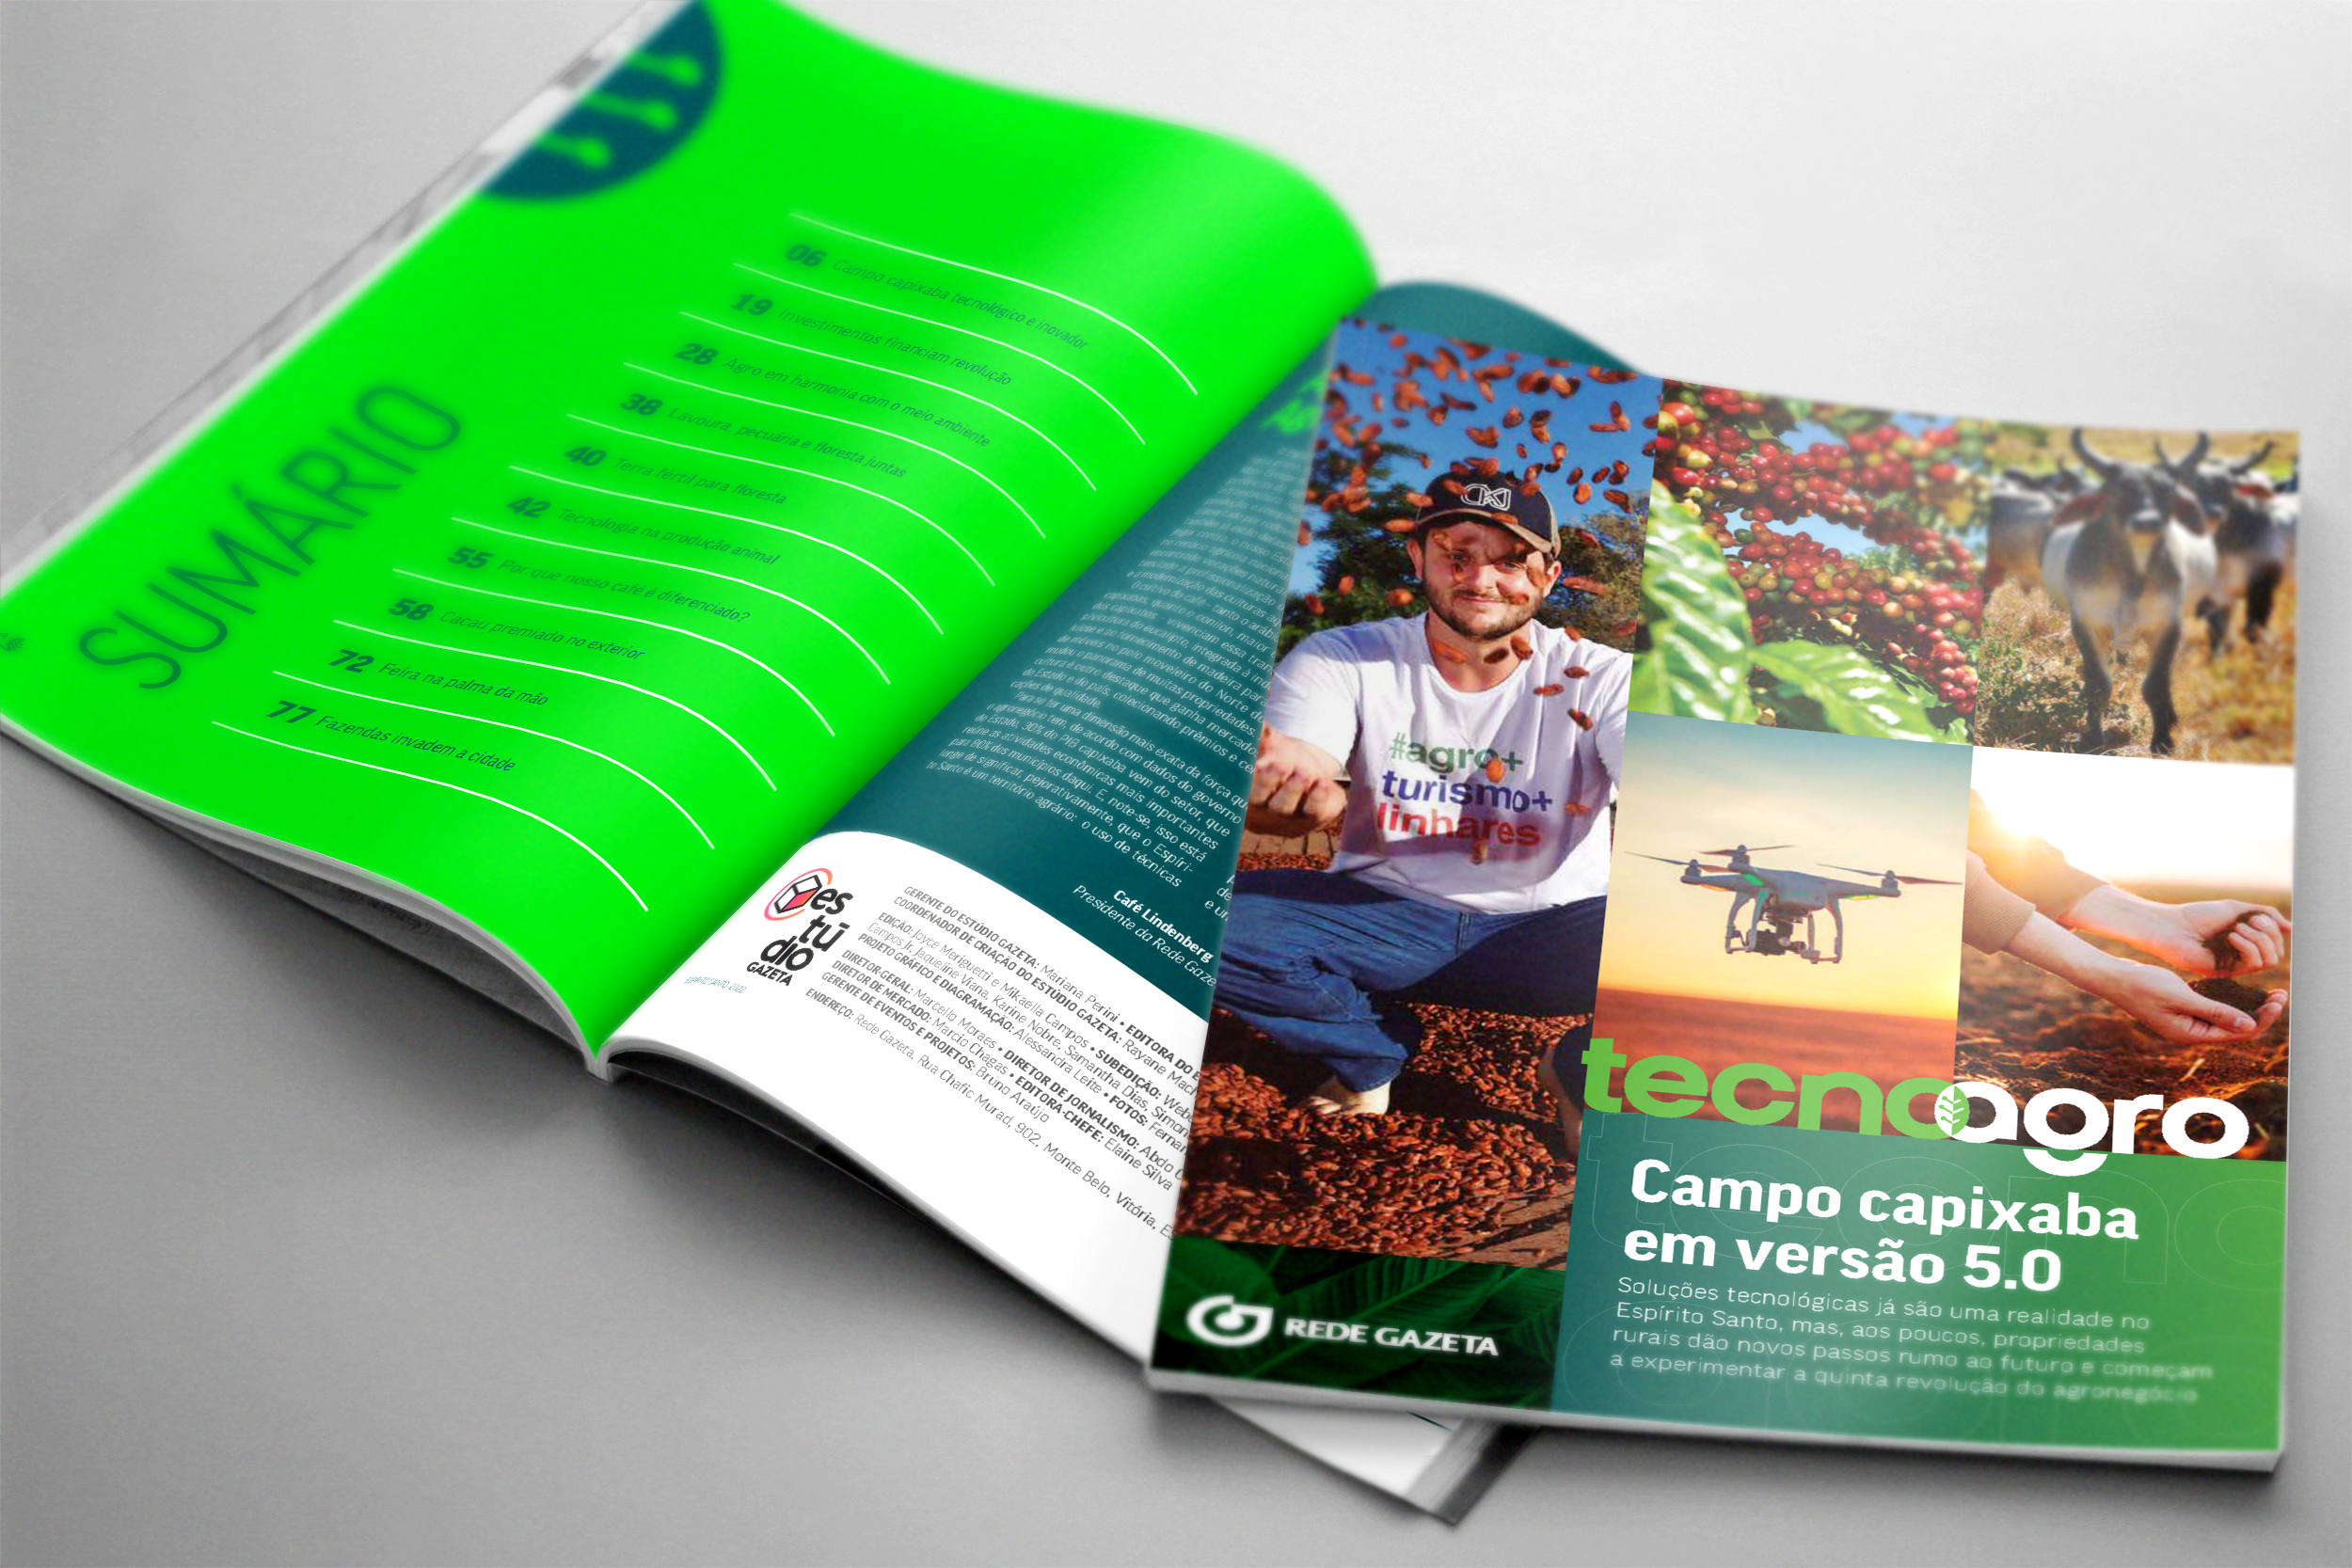 Publicação em versões impressa e on-line traz um panorama do agronegócio no Espírito Santo pela visão de quem trabalha no campo